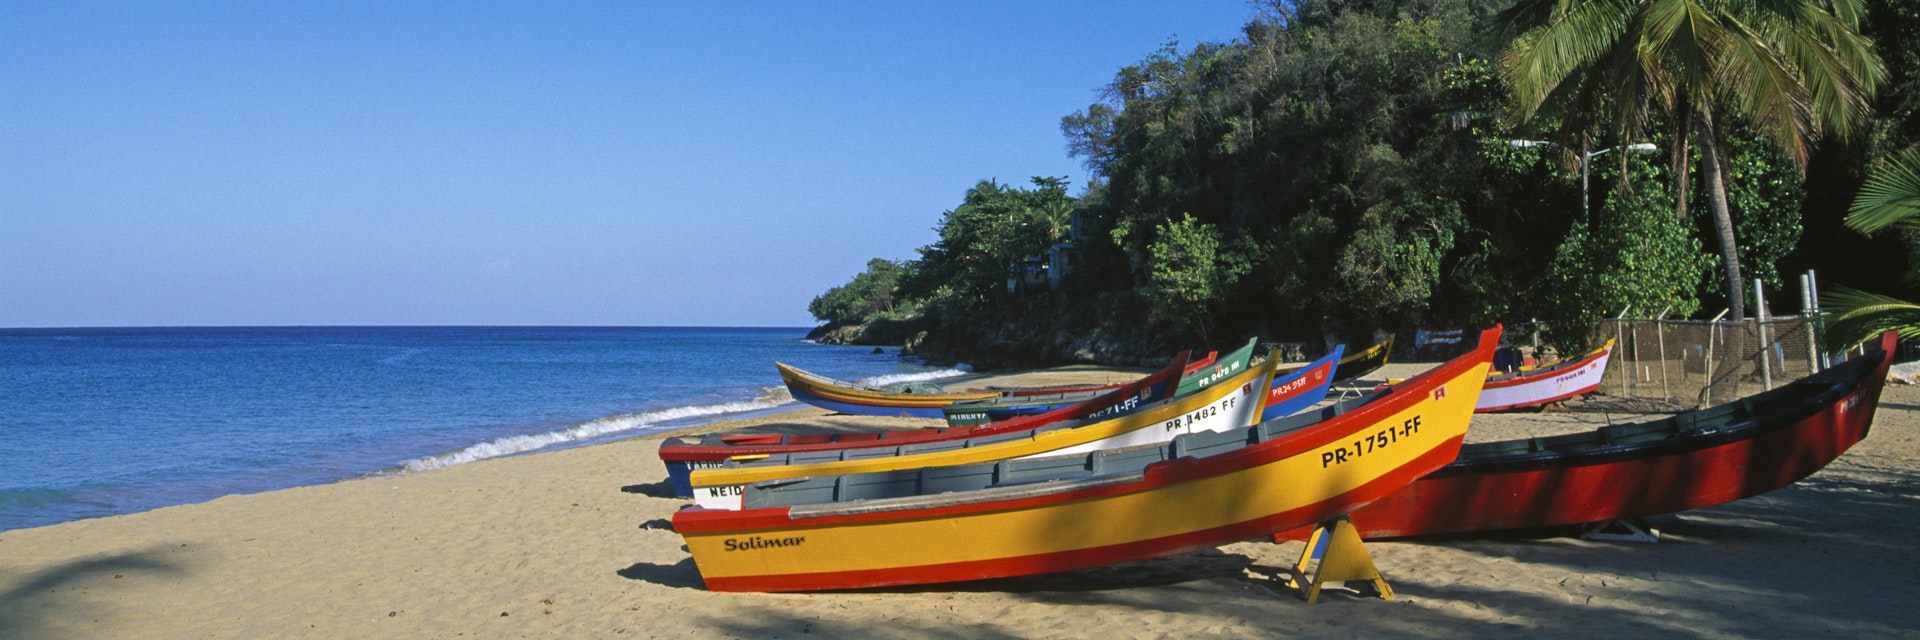 Fishing boats on Crash Boat Beach, Aguadilla, Puerto Rico, Caribbean